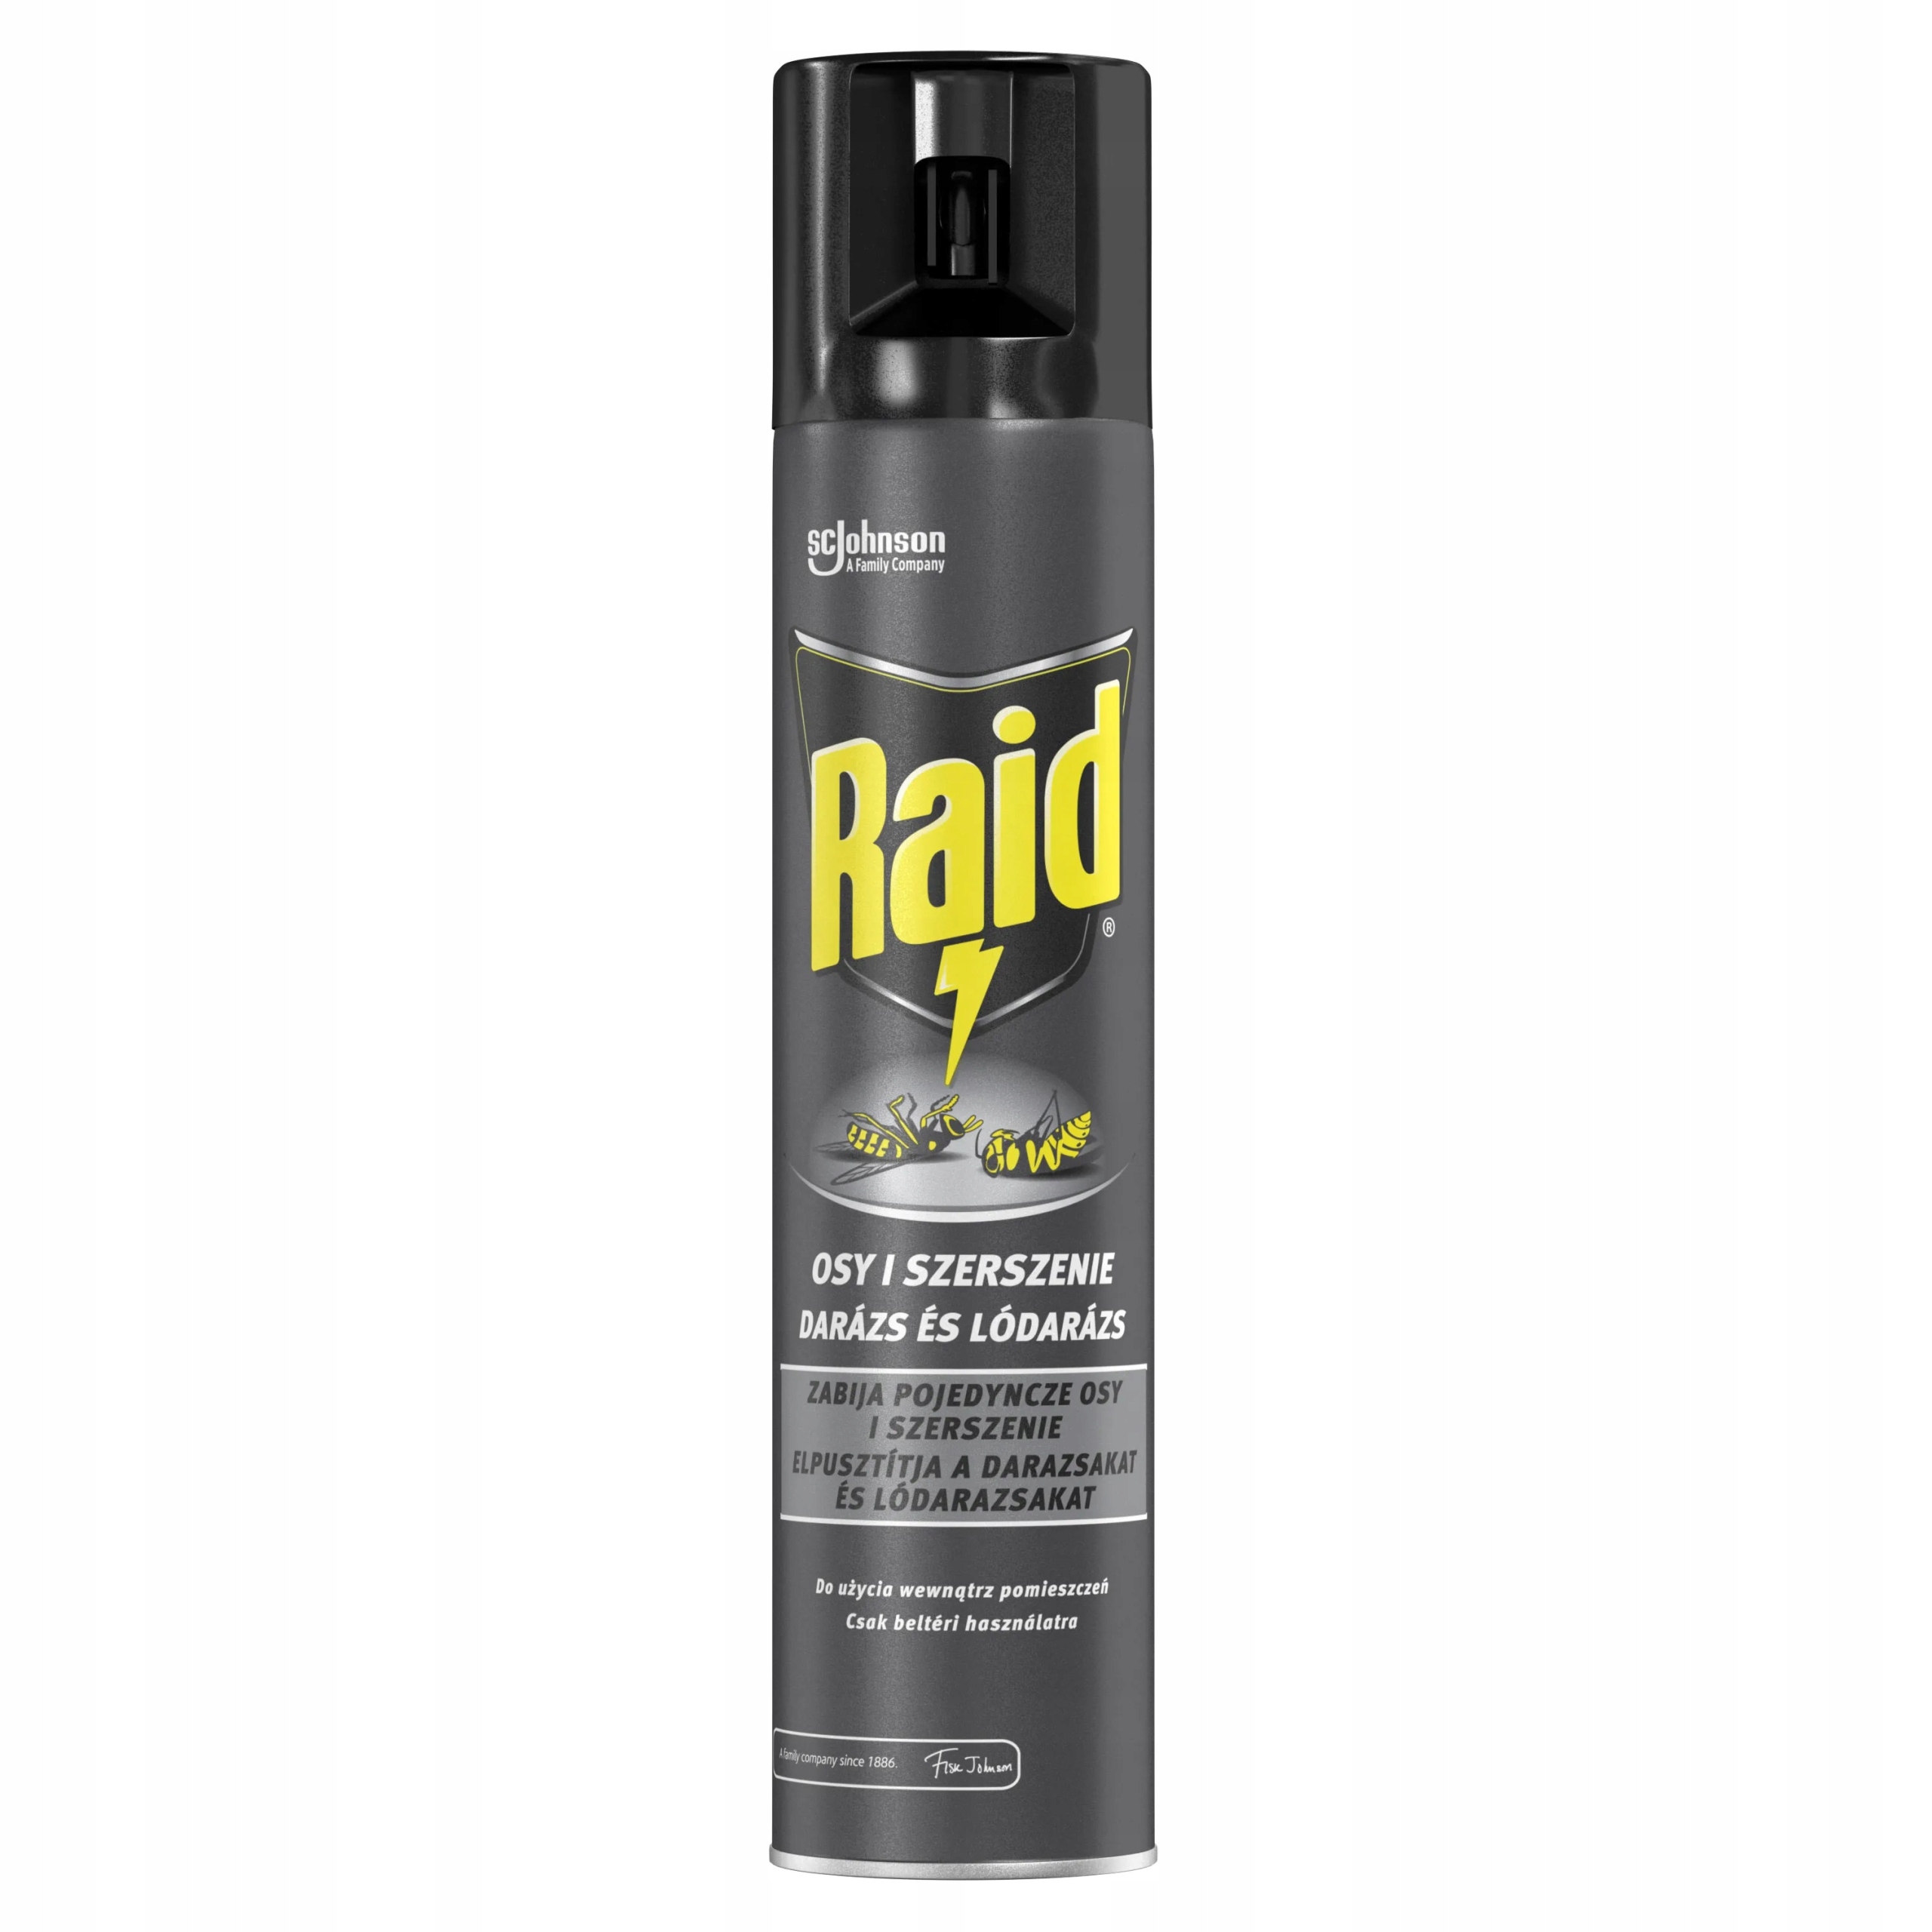 Рейд сторе купить. Raid Insecticide Spray. Raid от мух и комаров аэрозоль 300 мл/12шт/676979/628951. Спрей 300 мл. Рейд от ОС И шершней.